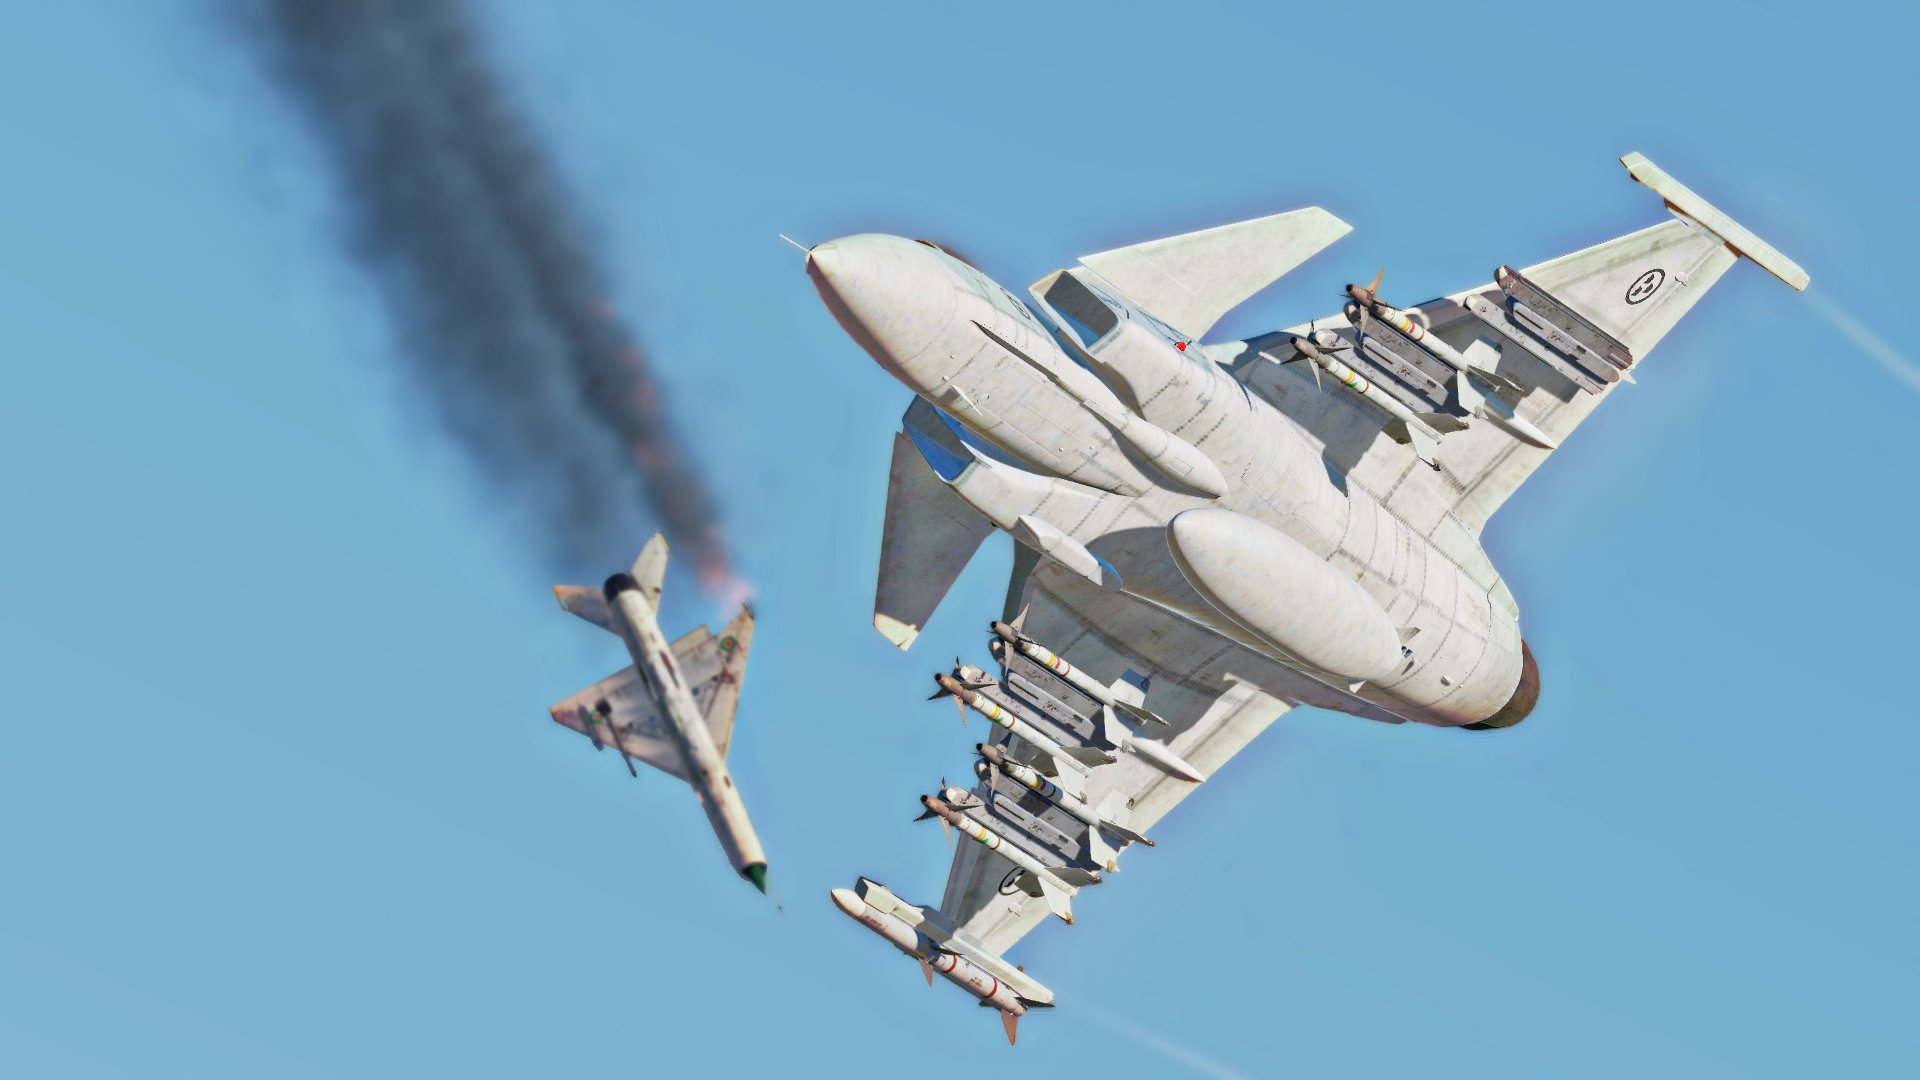 Digital Combat Simulator de graça por um mês! - Poder Aéreo – Aviação,  Forças Aéreas, Indústria Aeroespacial e de Defesa